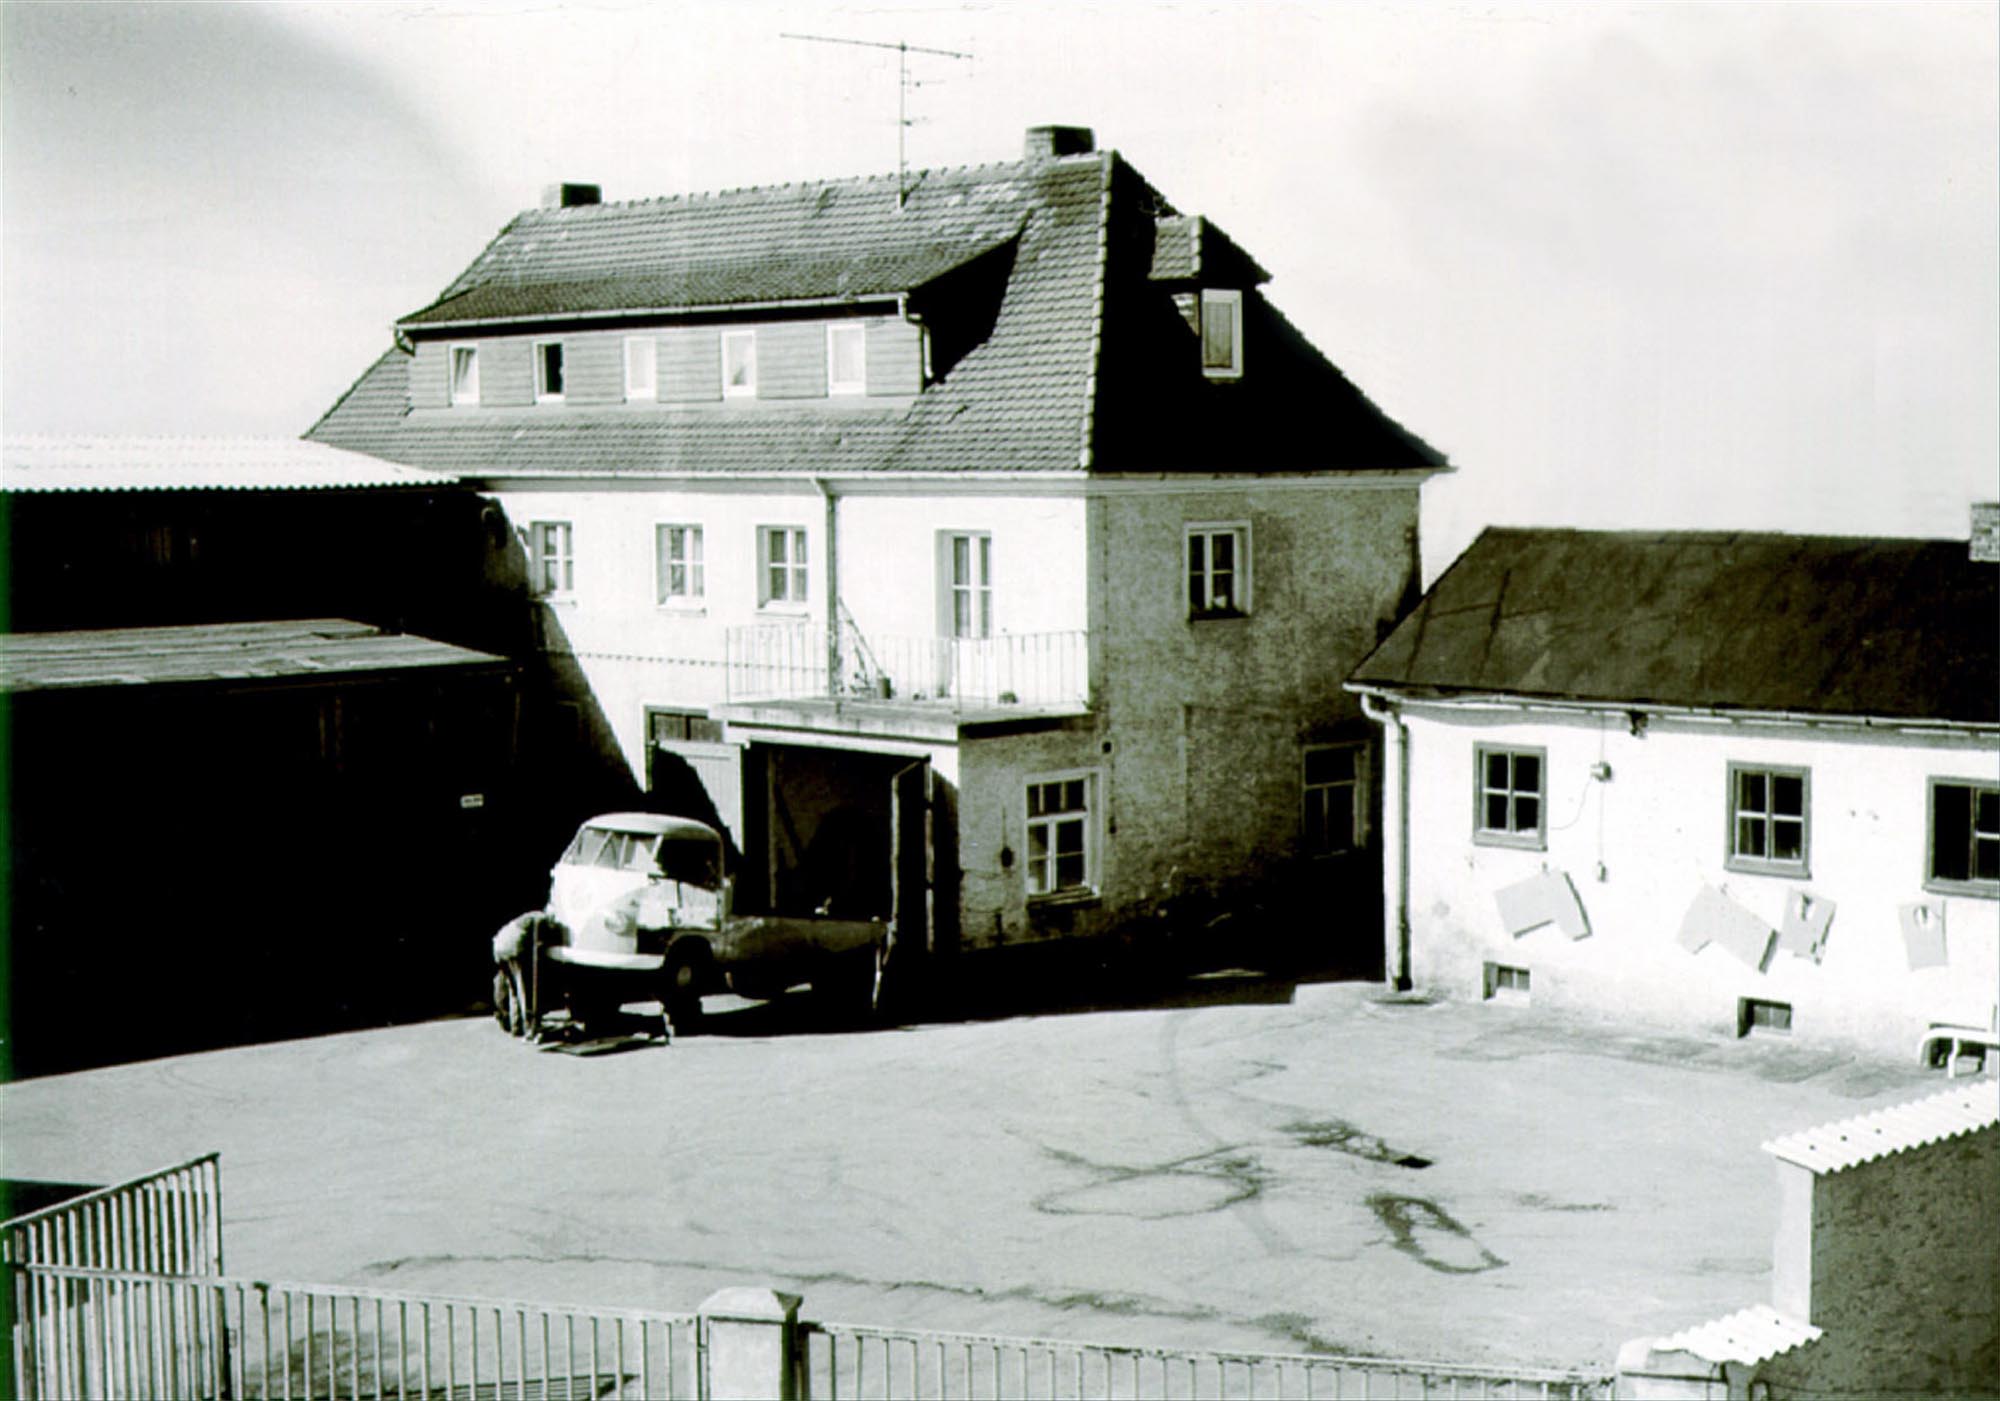 Warsztat rzemieślniczy 1960 r.